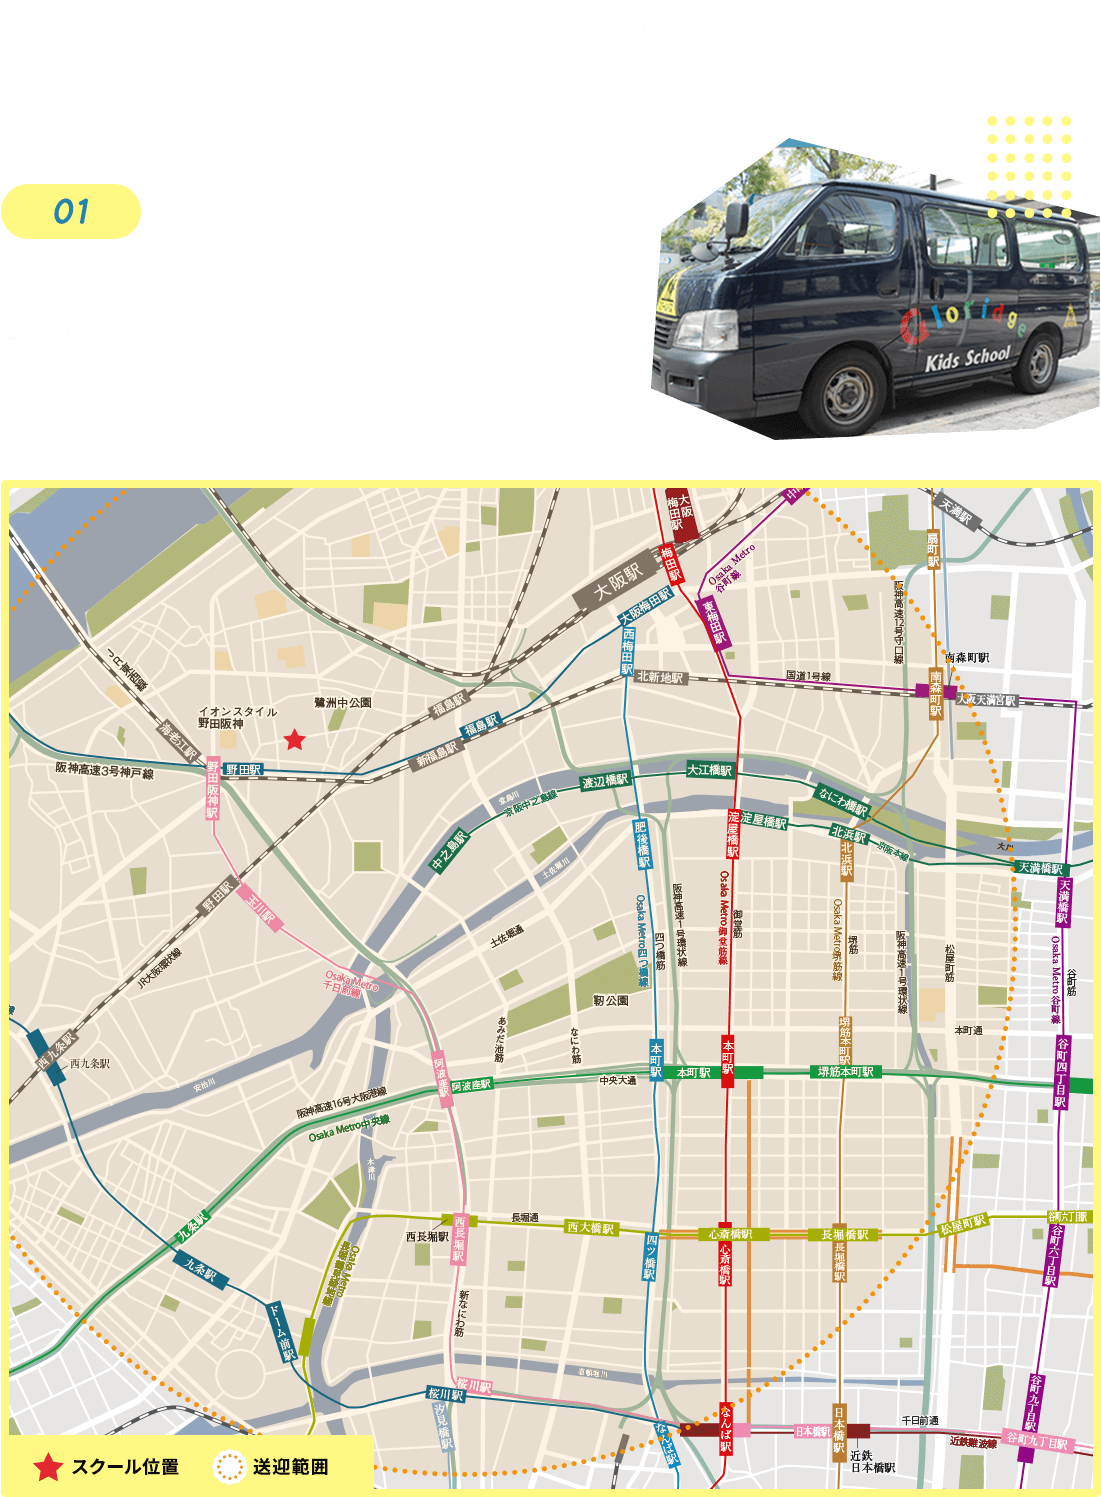 サービスの紹介 01送迎サービス 送迎は専用バスで、福島区や西区の一部、北区の一部に回っています。おおむね片道10～15分が送迎範囲です。